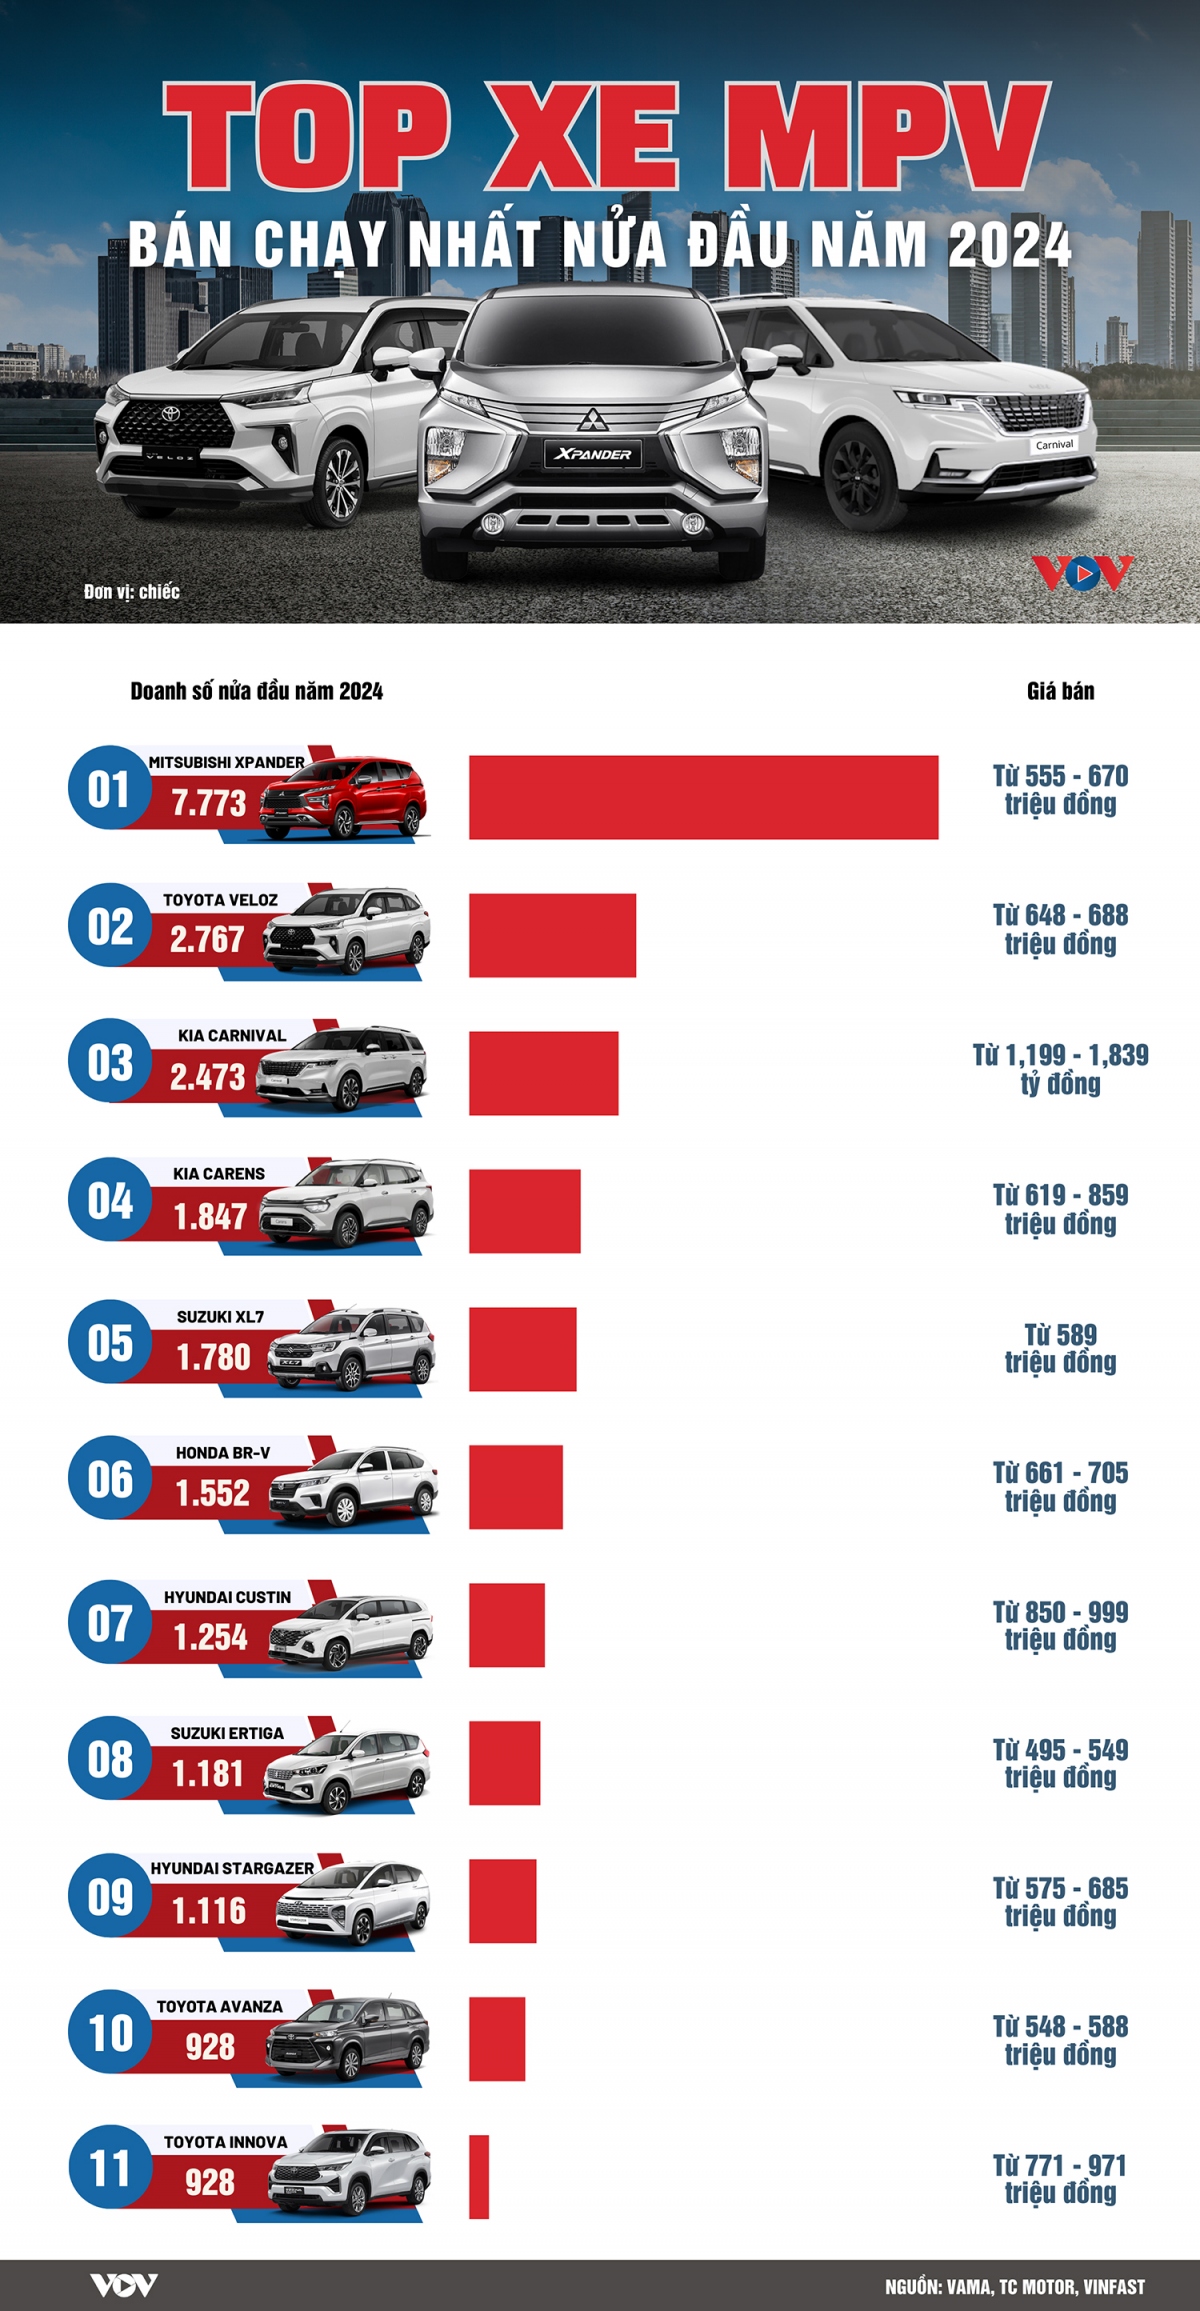 Top xe MPV bán chạy nhất nửa đầu năm 2024